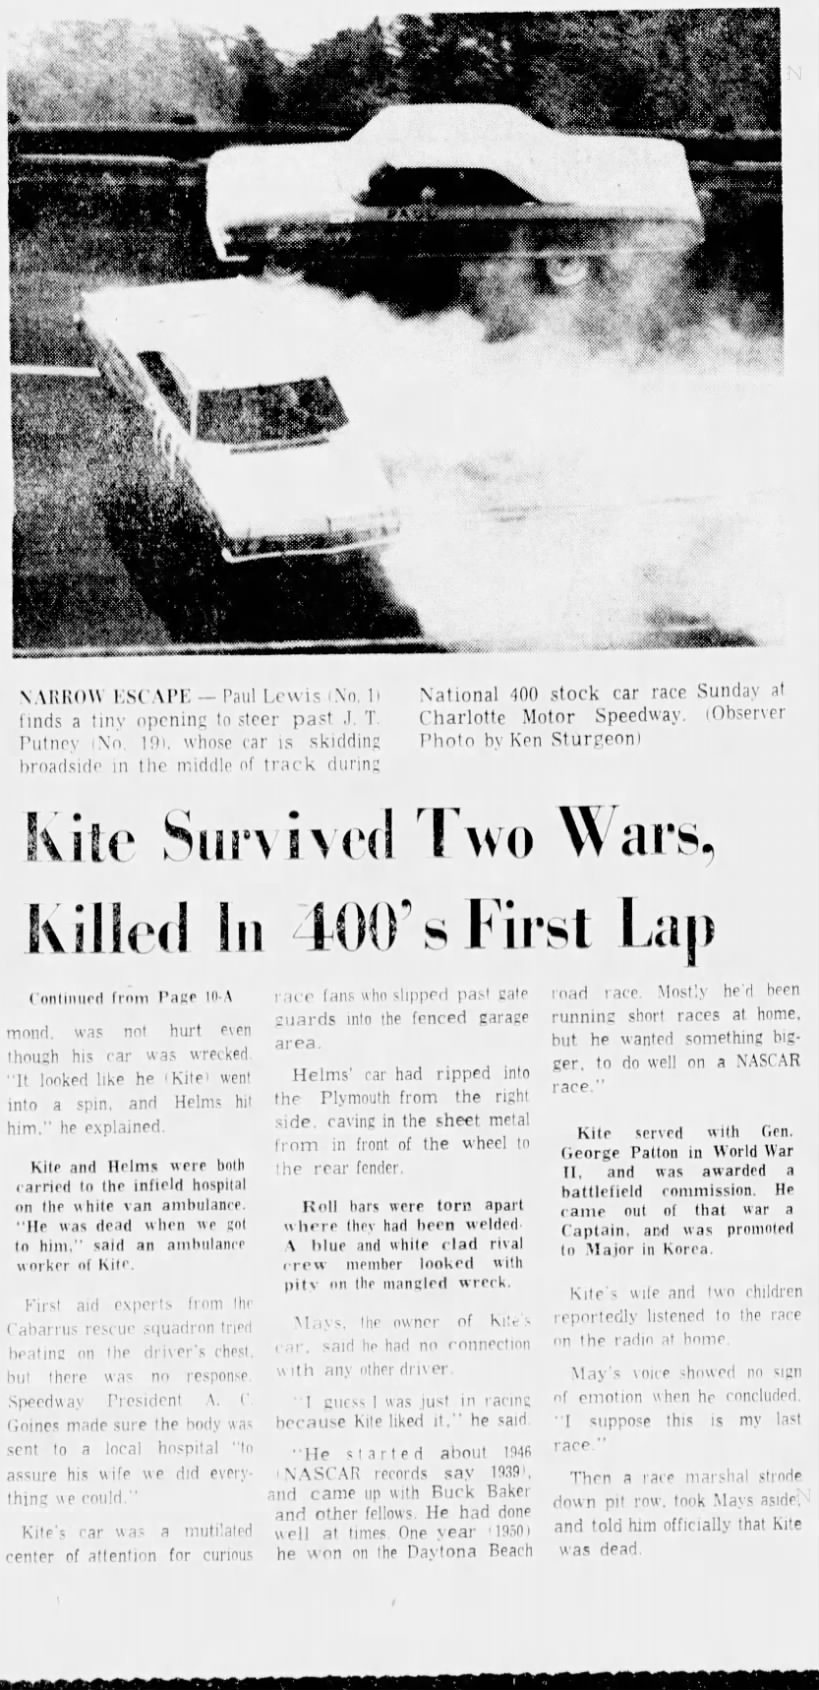 Kite Survived Wars, Died At High Speed (Part 2)